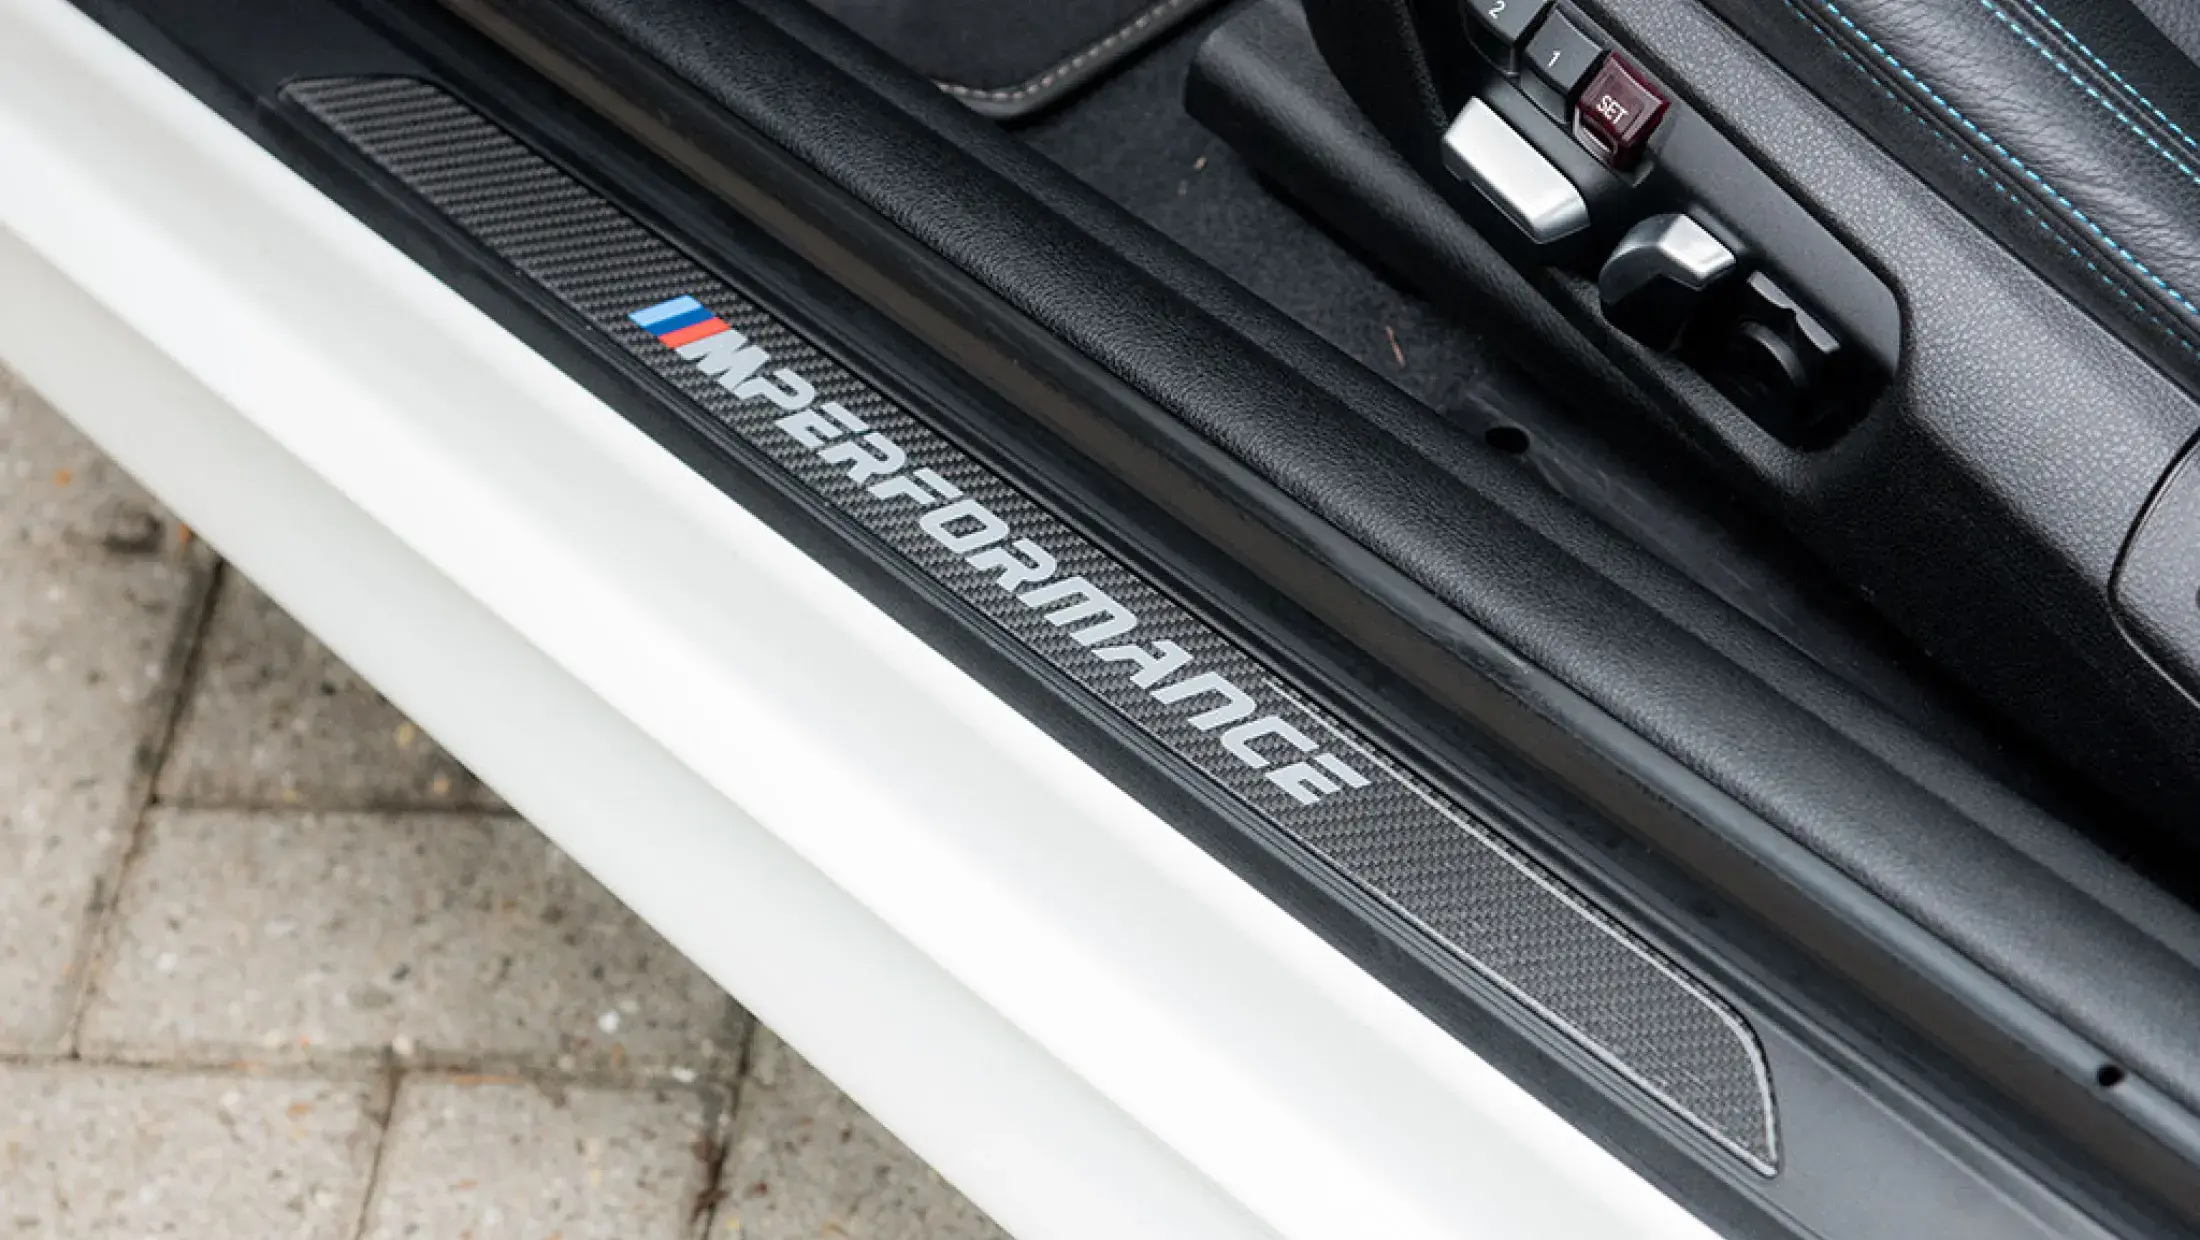 BMW M2 Competition DCT Full M Performance Alpin Weiss Leder Dakota geperforeerd Schwarz Bergwerff